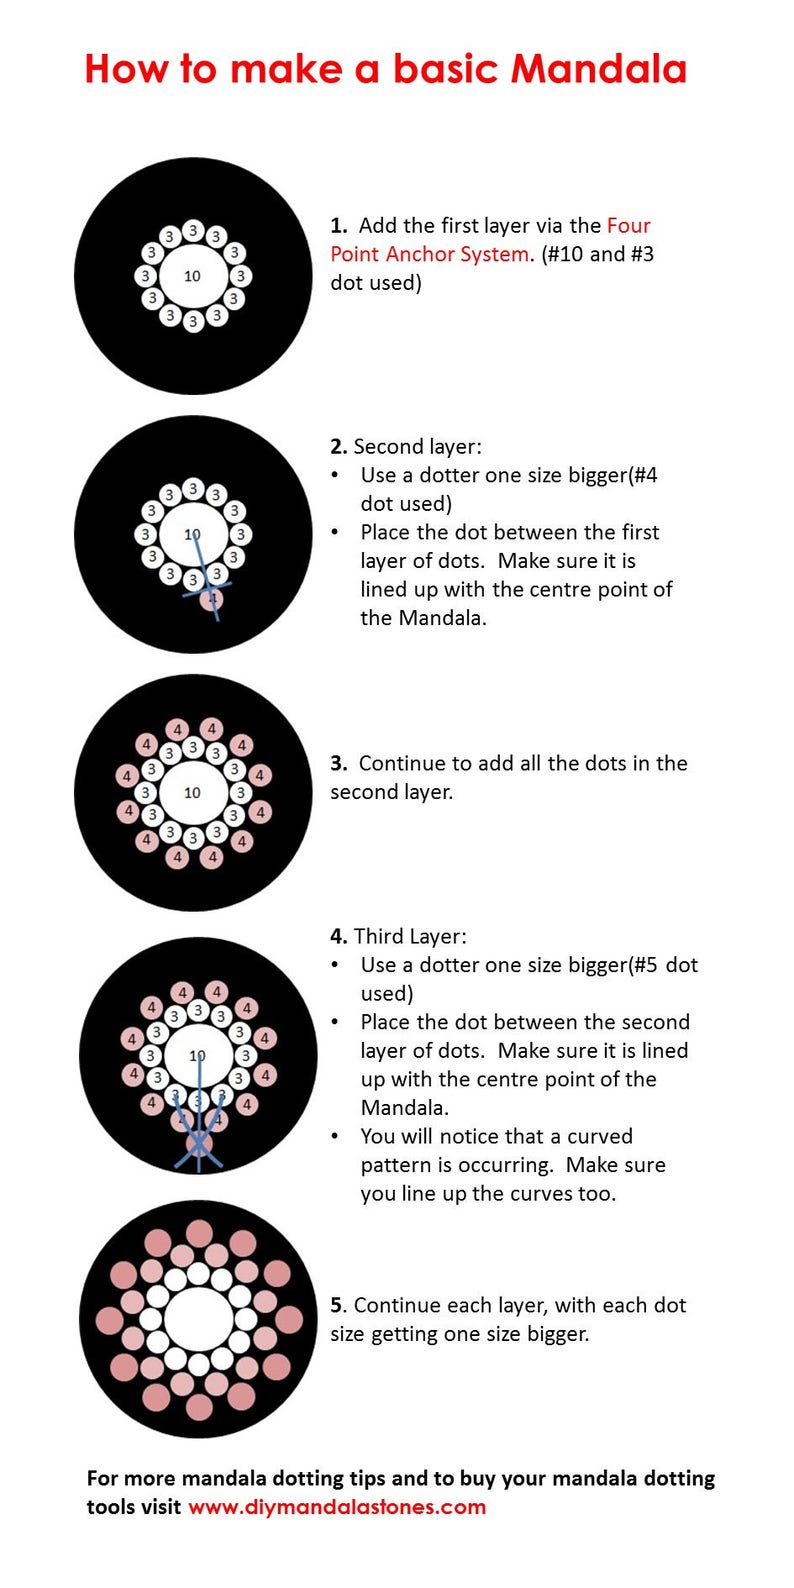 Mandala Dotting Tools size 1-16 image 8